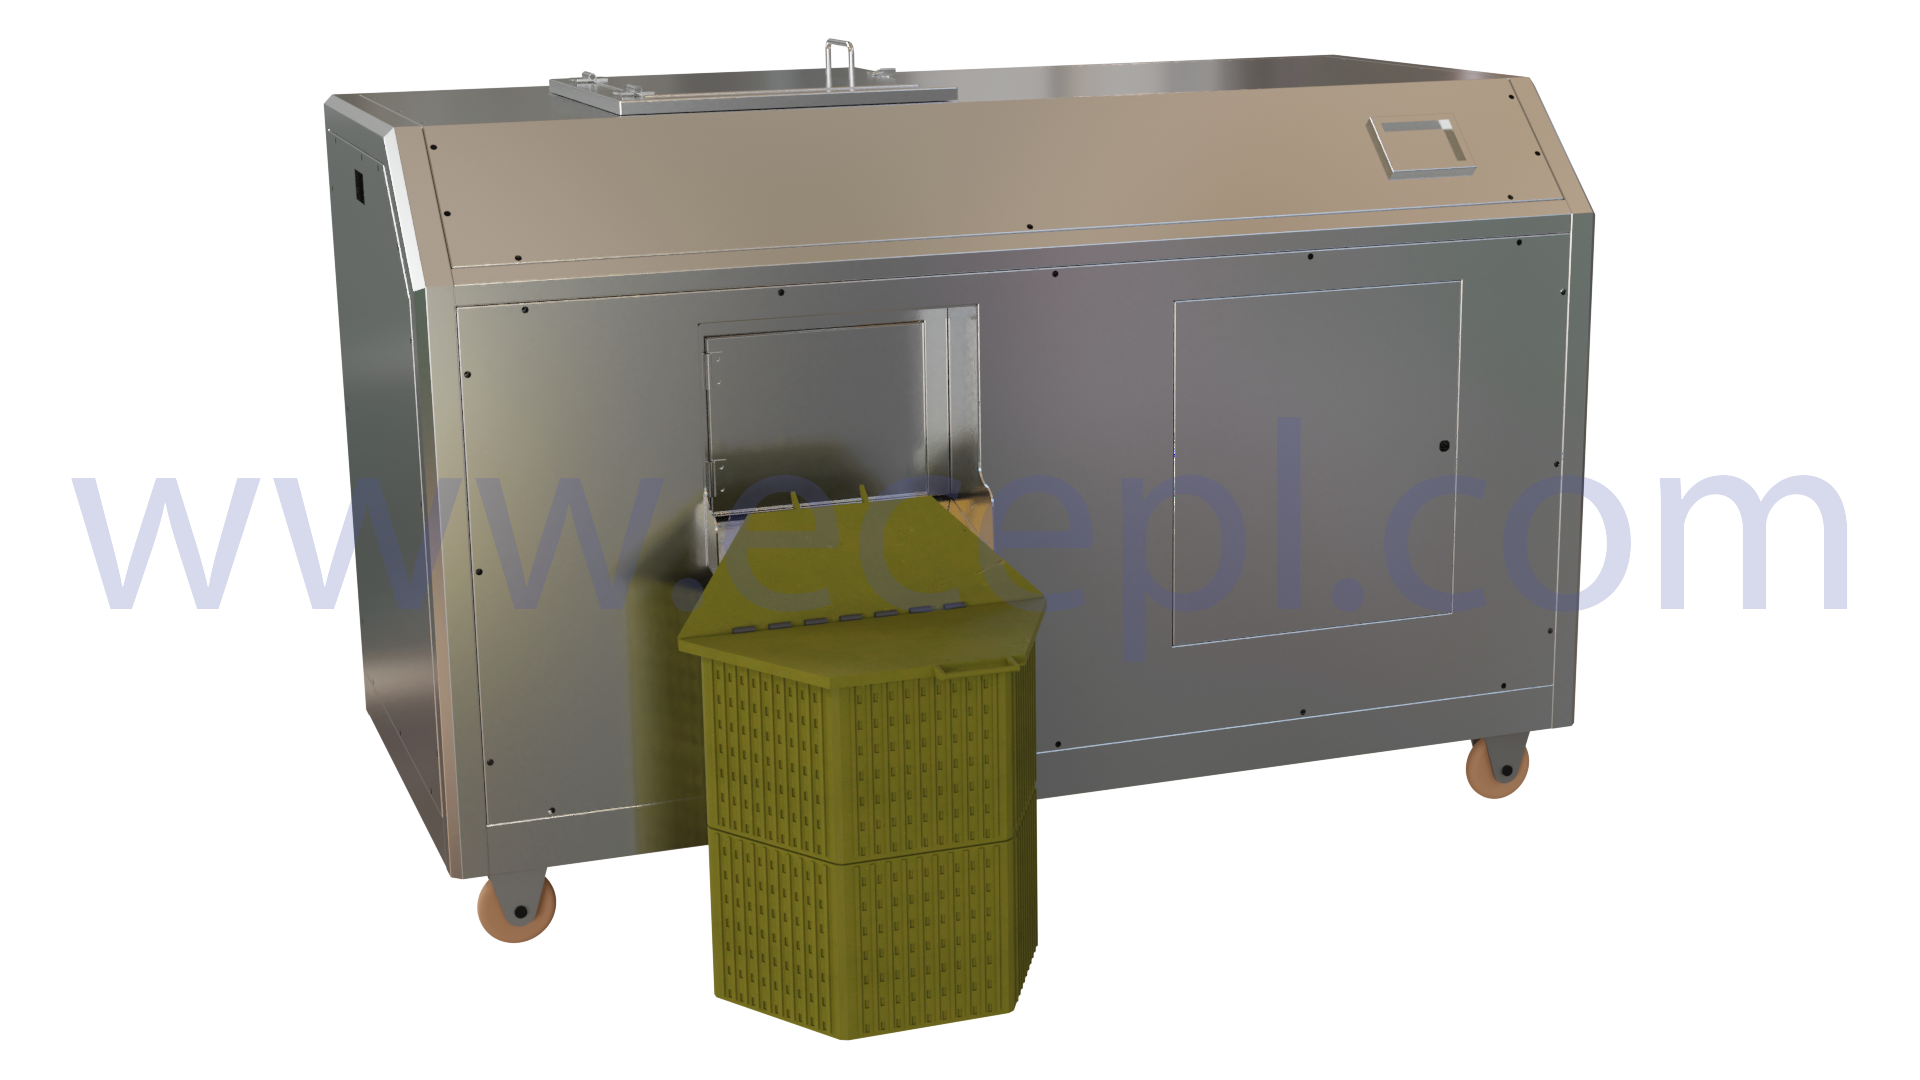 Máy ủ chất thải hữu cơ - Công ty TNHH Tư Nhân Thiết Bị Earth Care